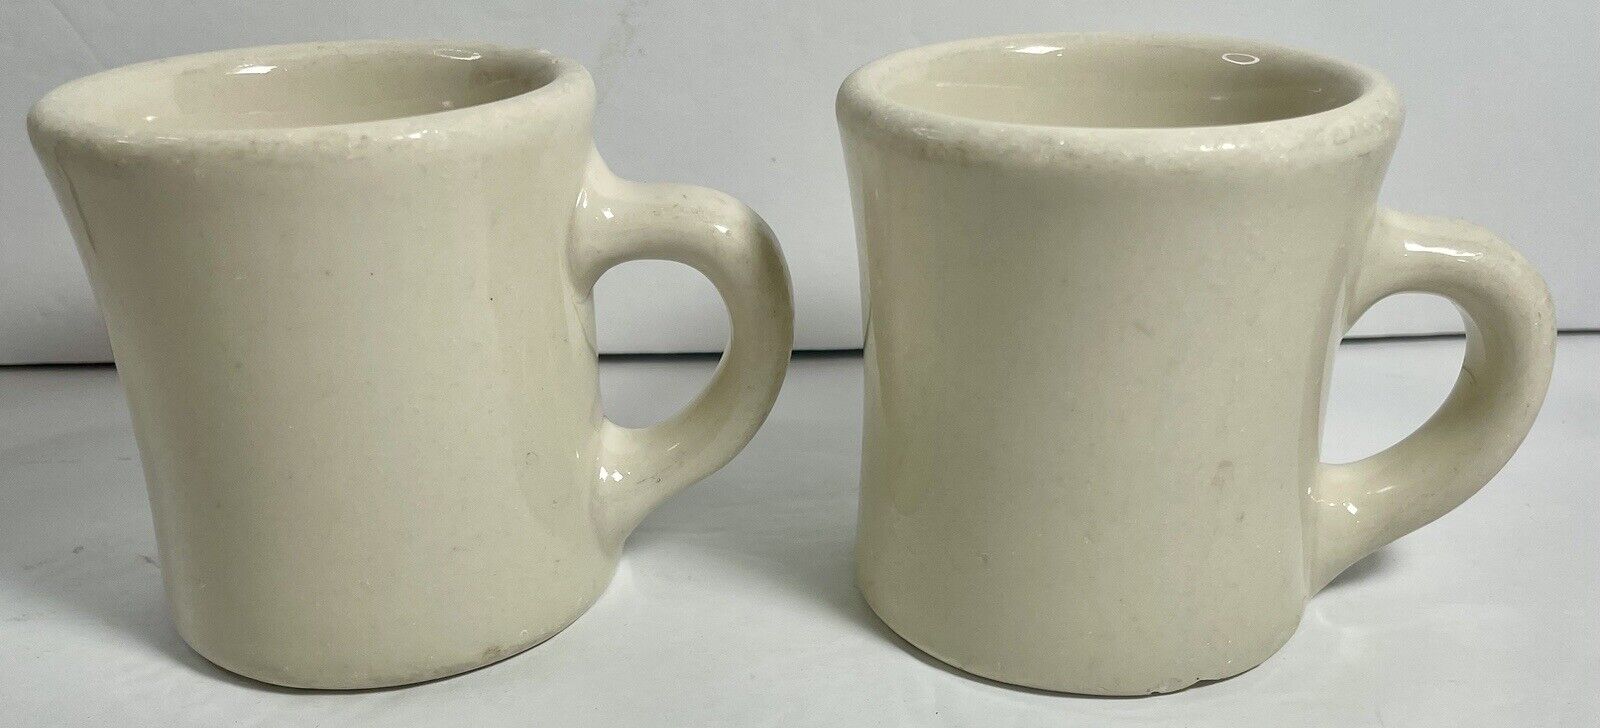 Victor Insulators Mug Diner Post WWII Restaurant Ware Porcelain Set Of 2 Vintage